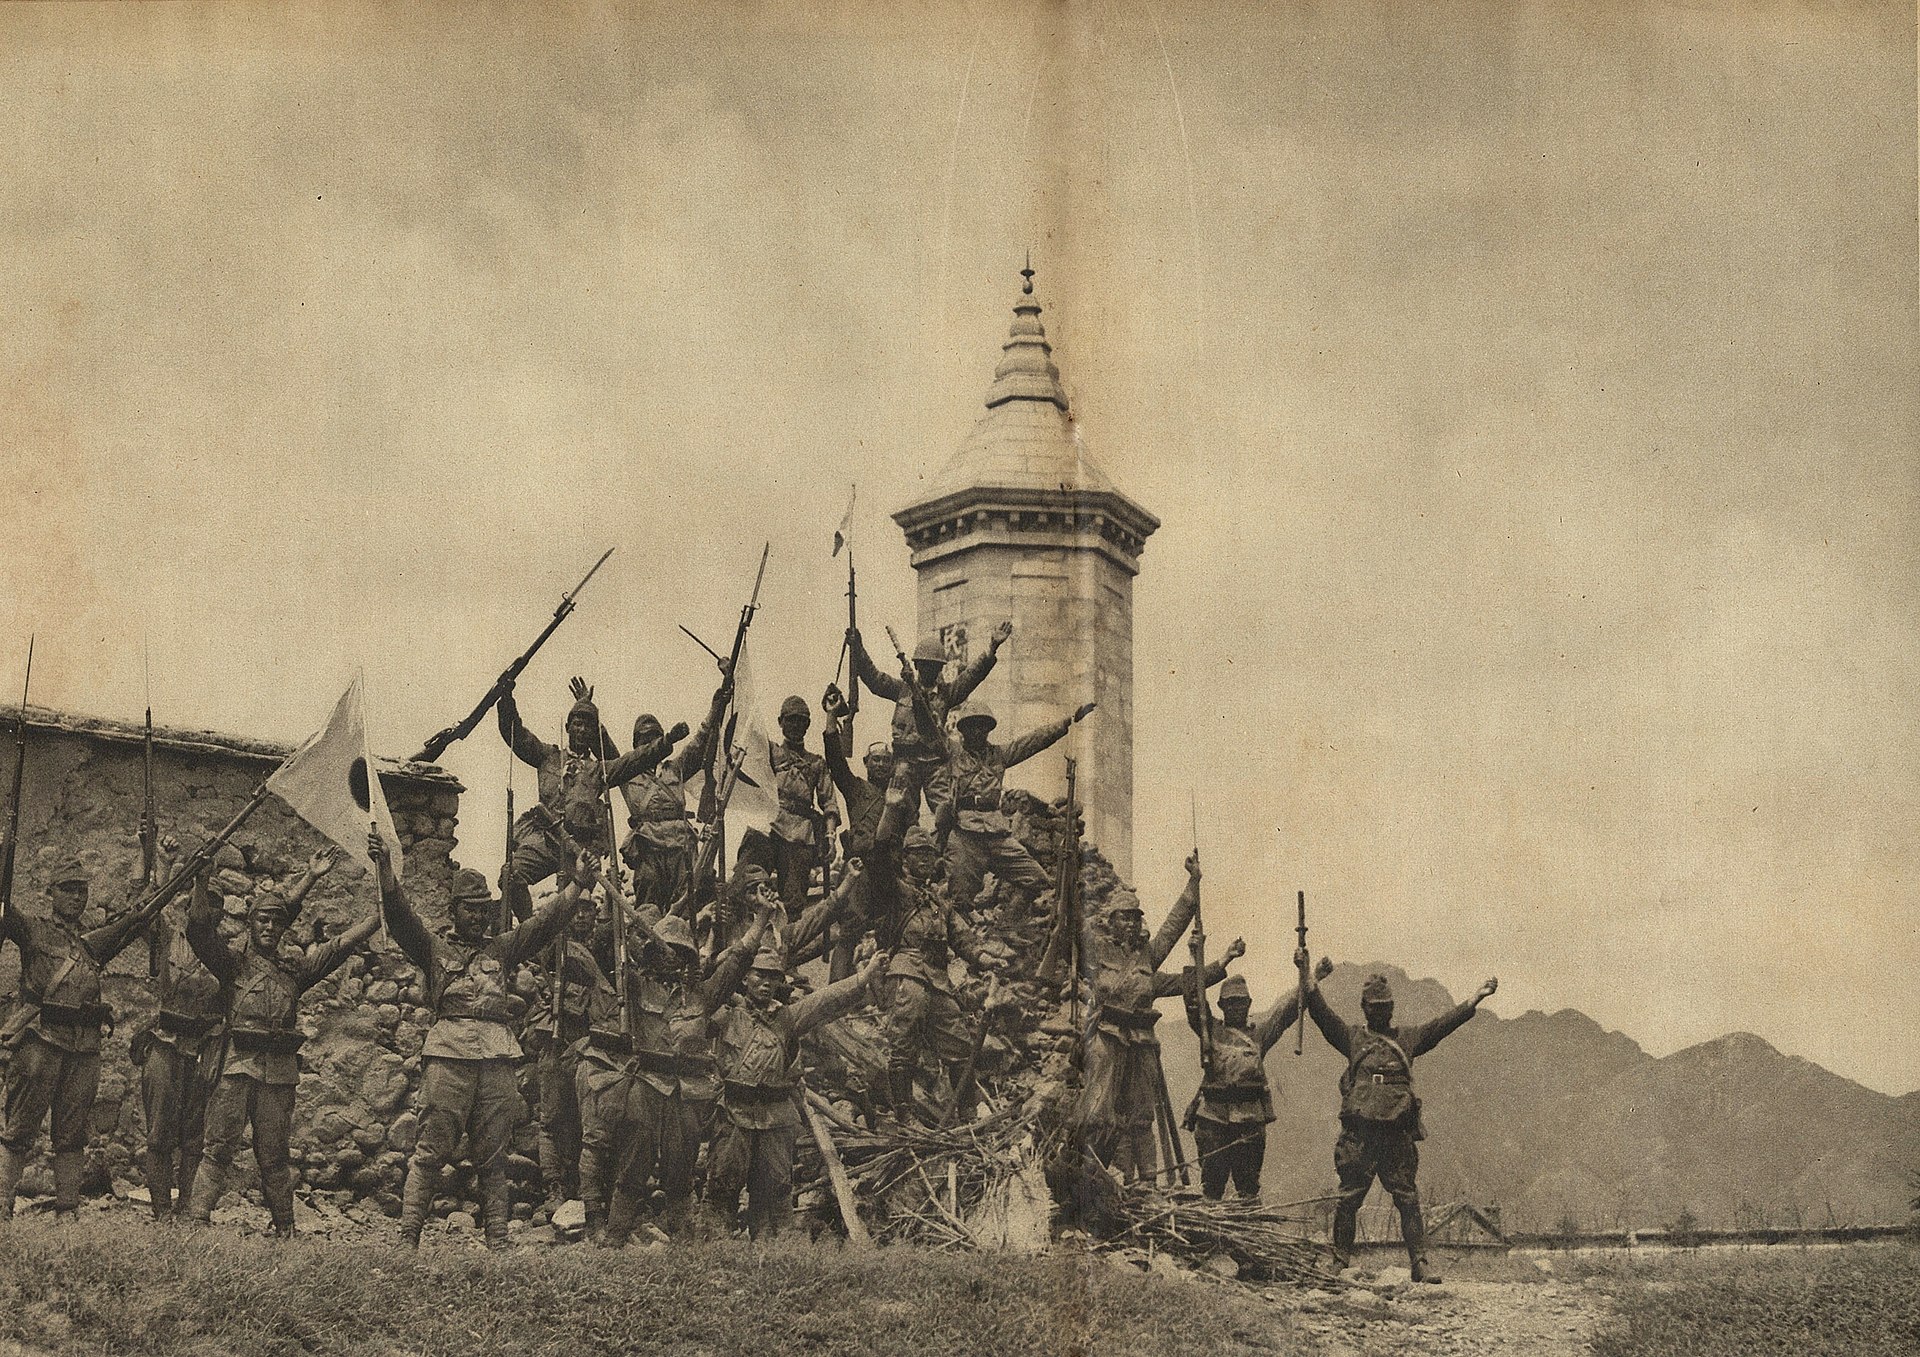 Tropas japoneses festejando una victoria cerca de Pekín, China, en el verano de 1937.